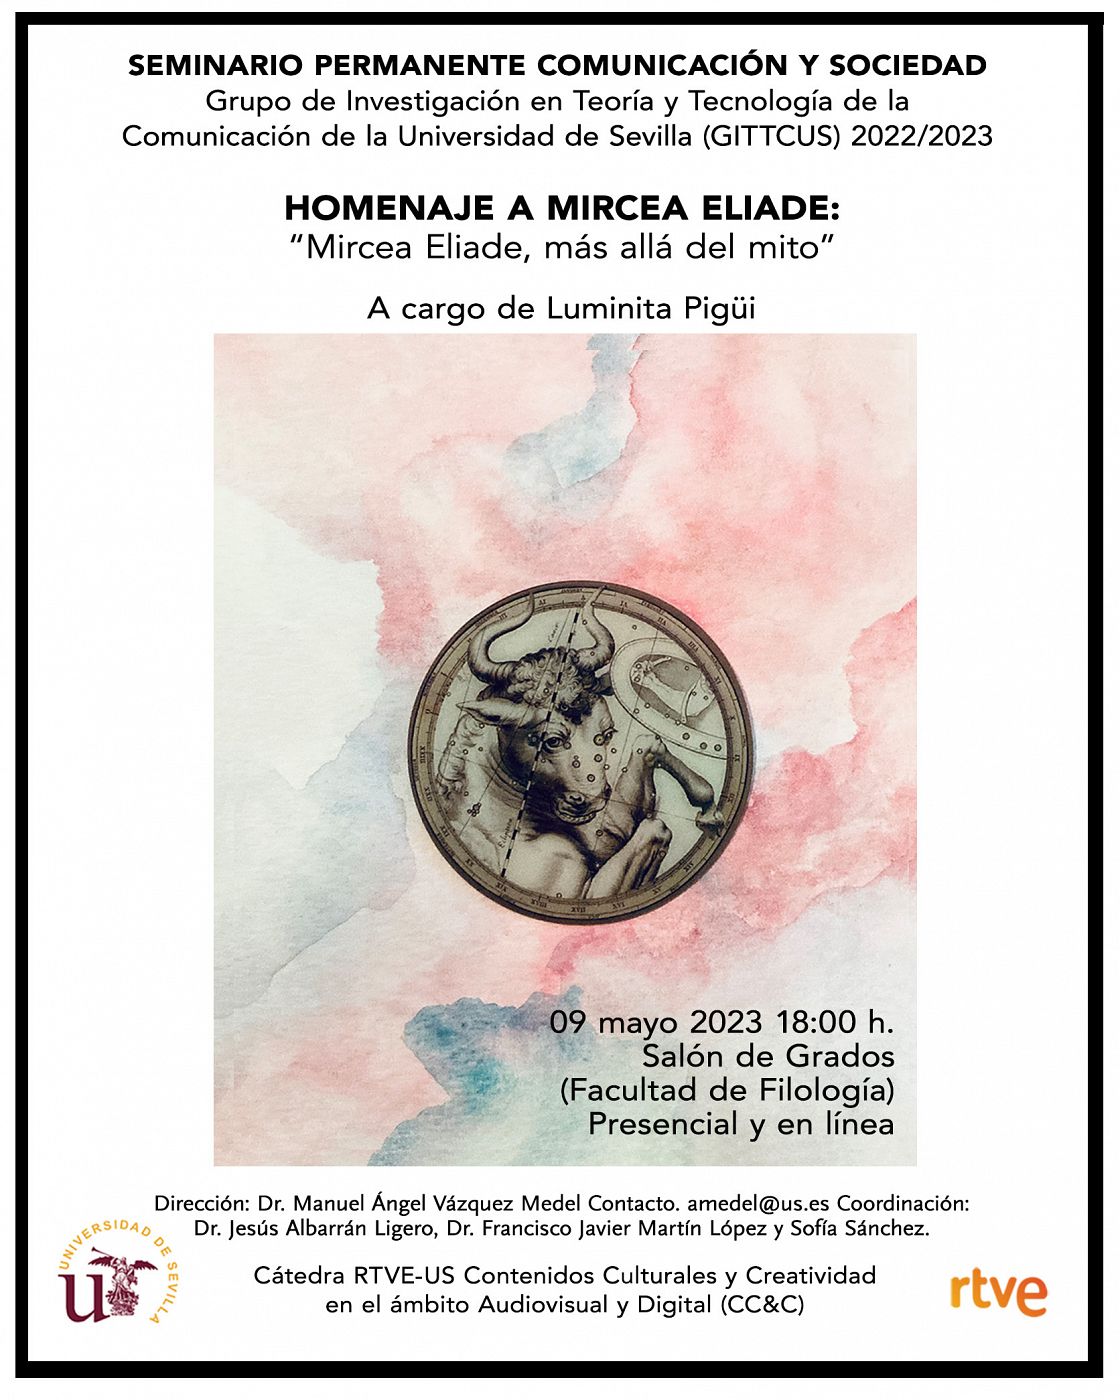 Homenaje a Mircea Eliade